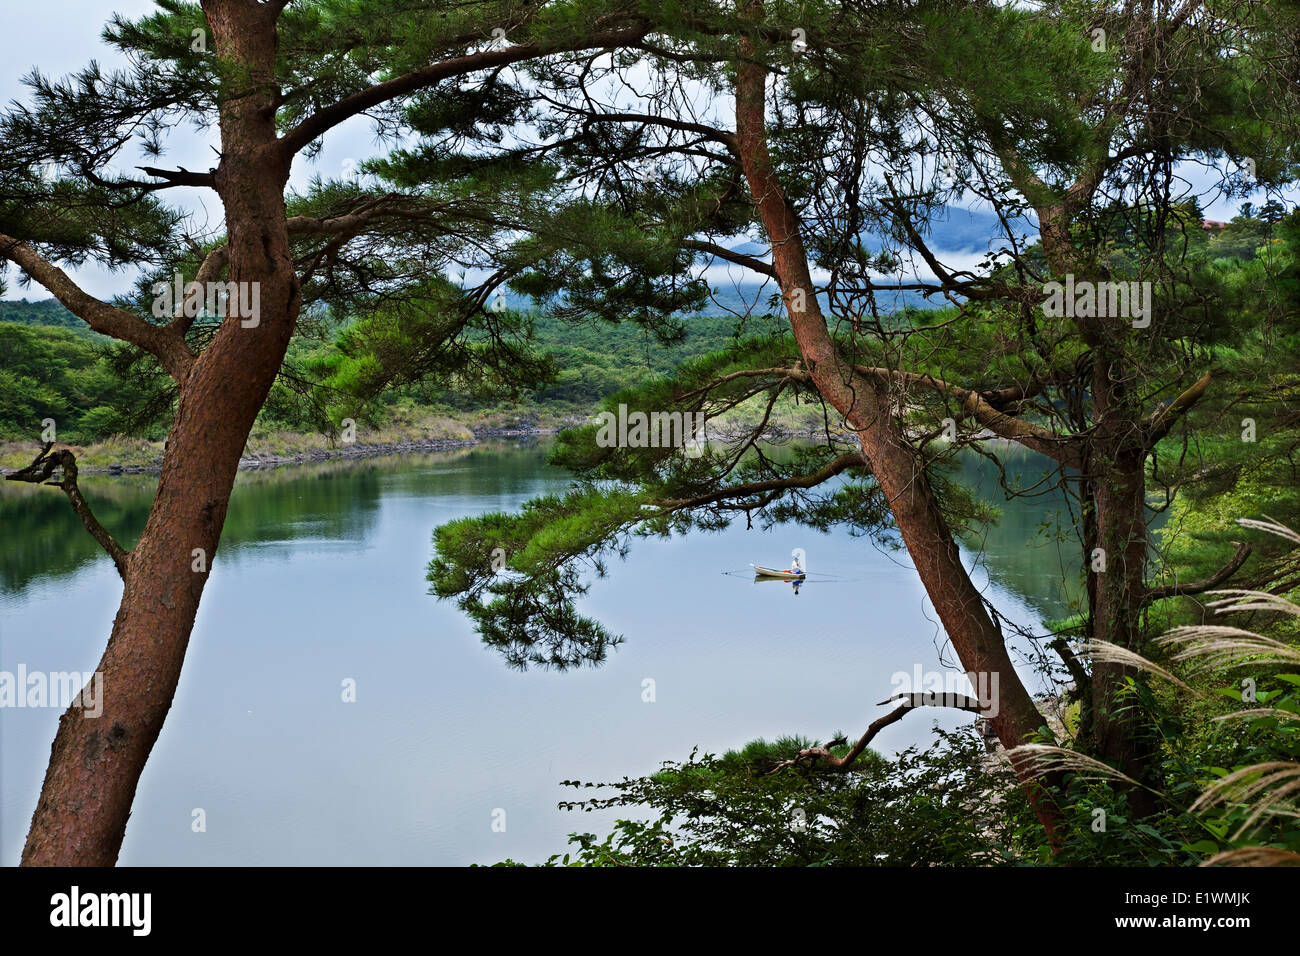 Il più piccolo dei cinque laghi che circondano la base settentrionale del Monte Fuji, il lago Shoji è parte dell'Fuji-Hakone-Izu National Foto Stock